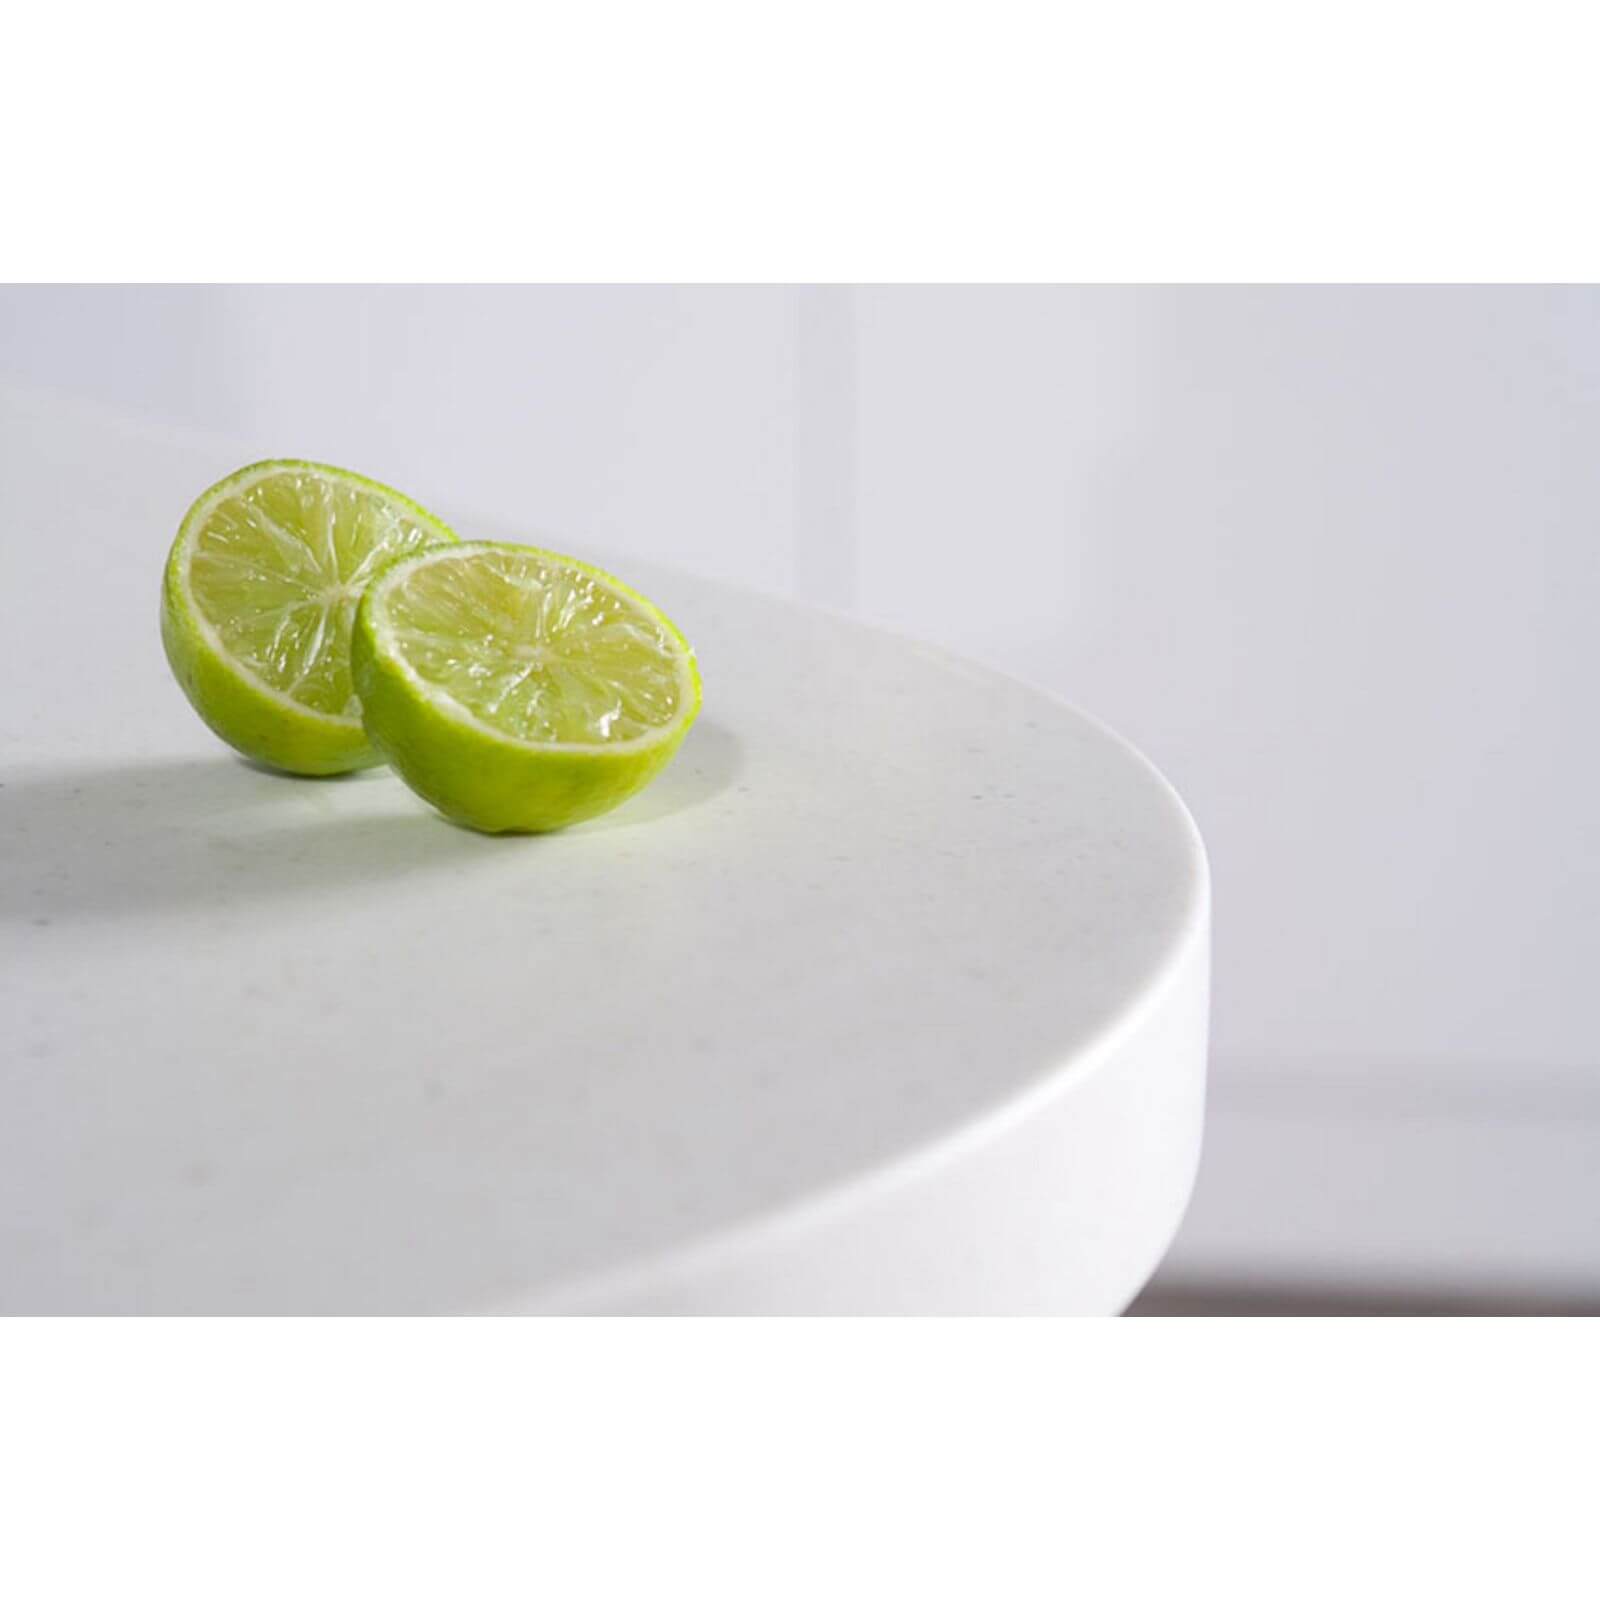 Maia Calcite Kitchen Sink Worktop - Universal Bowl - 3600 x 600 x 42mm